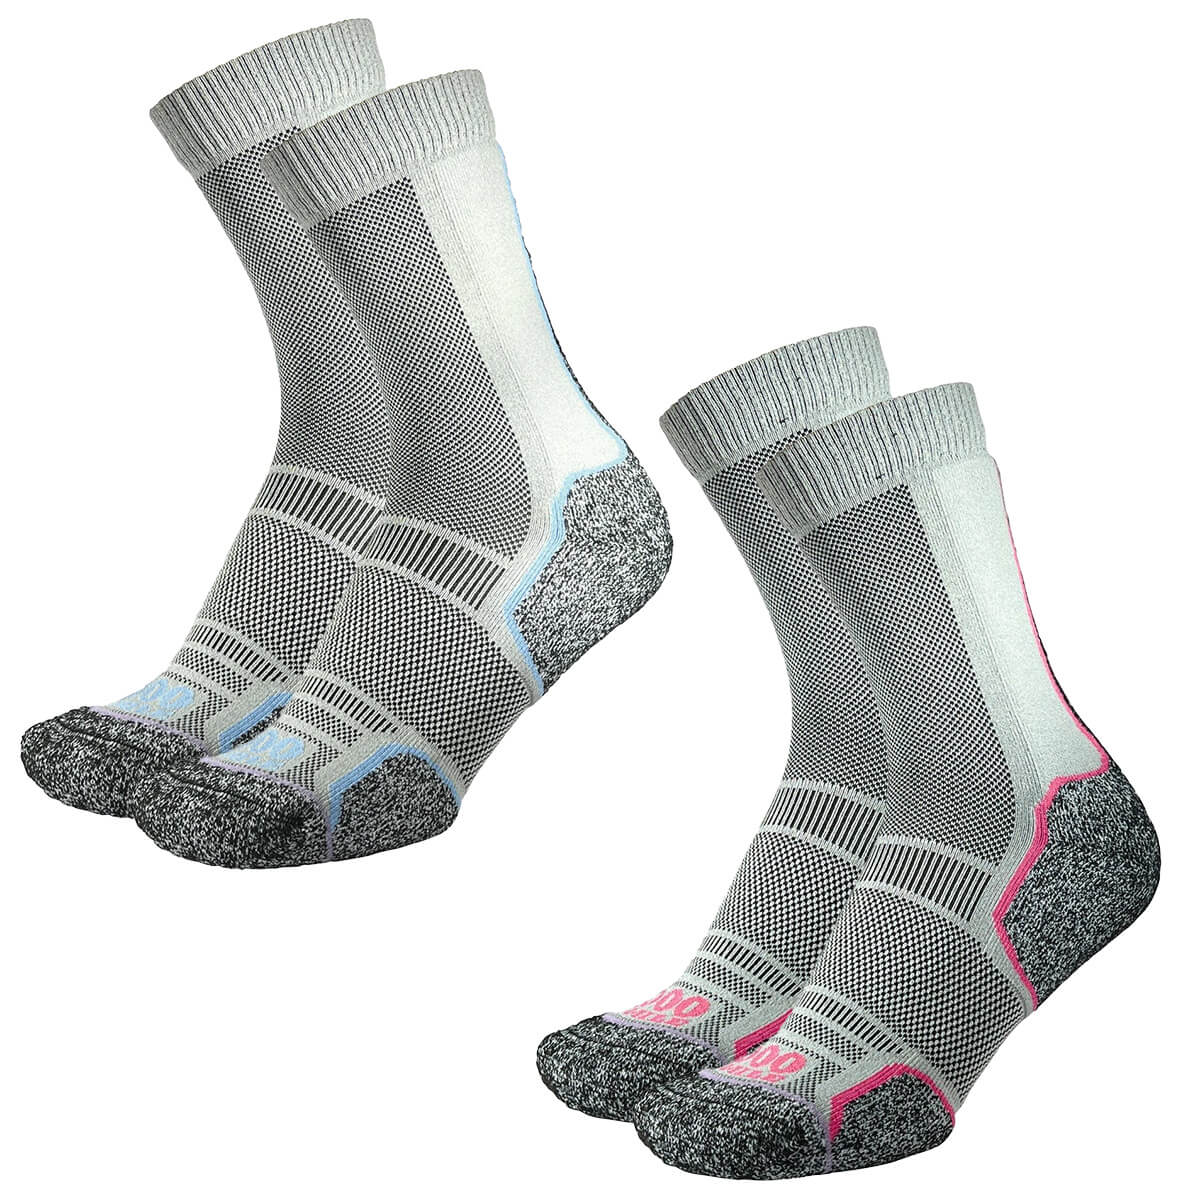 1000 Mile Trek Repreve Single Layer Twin Pack Socks - John Bull Clothing